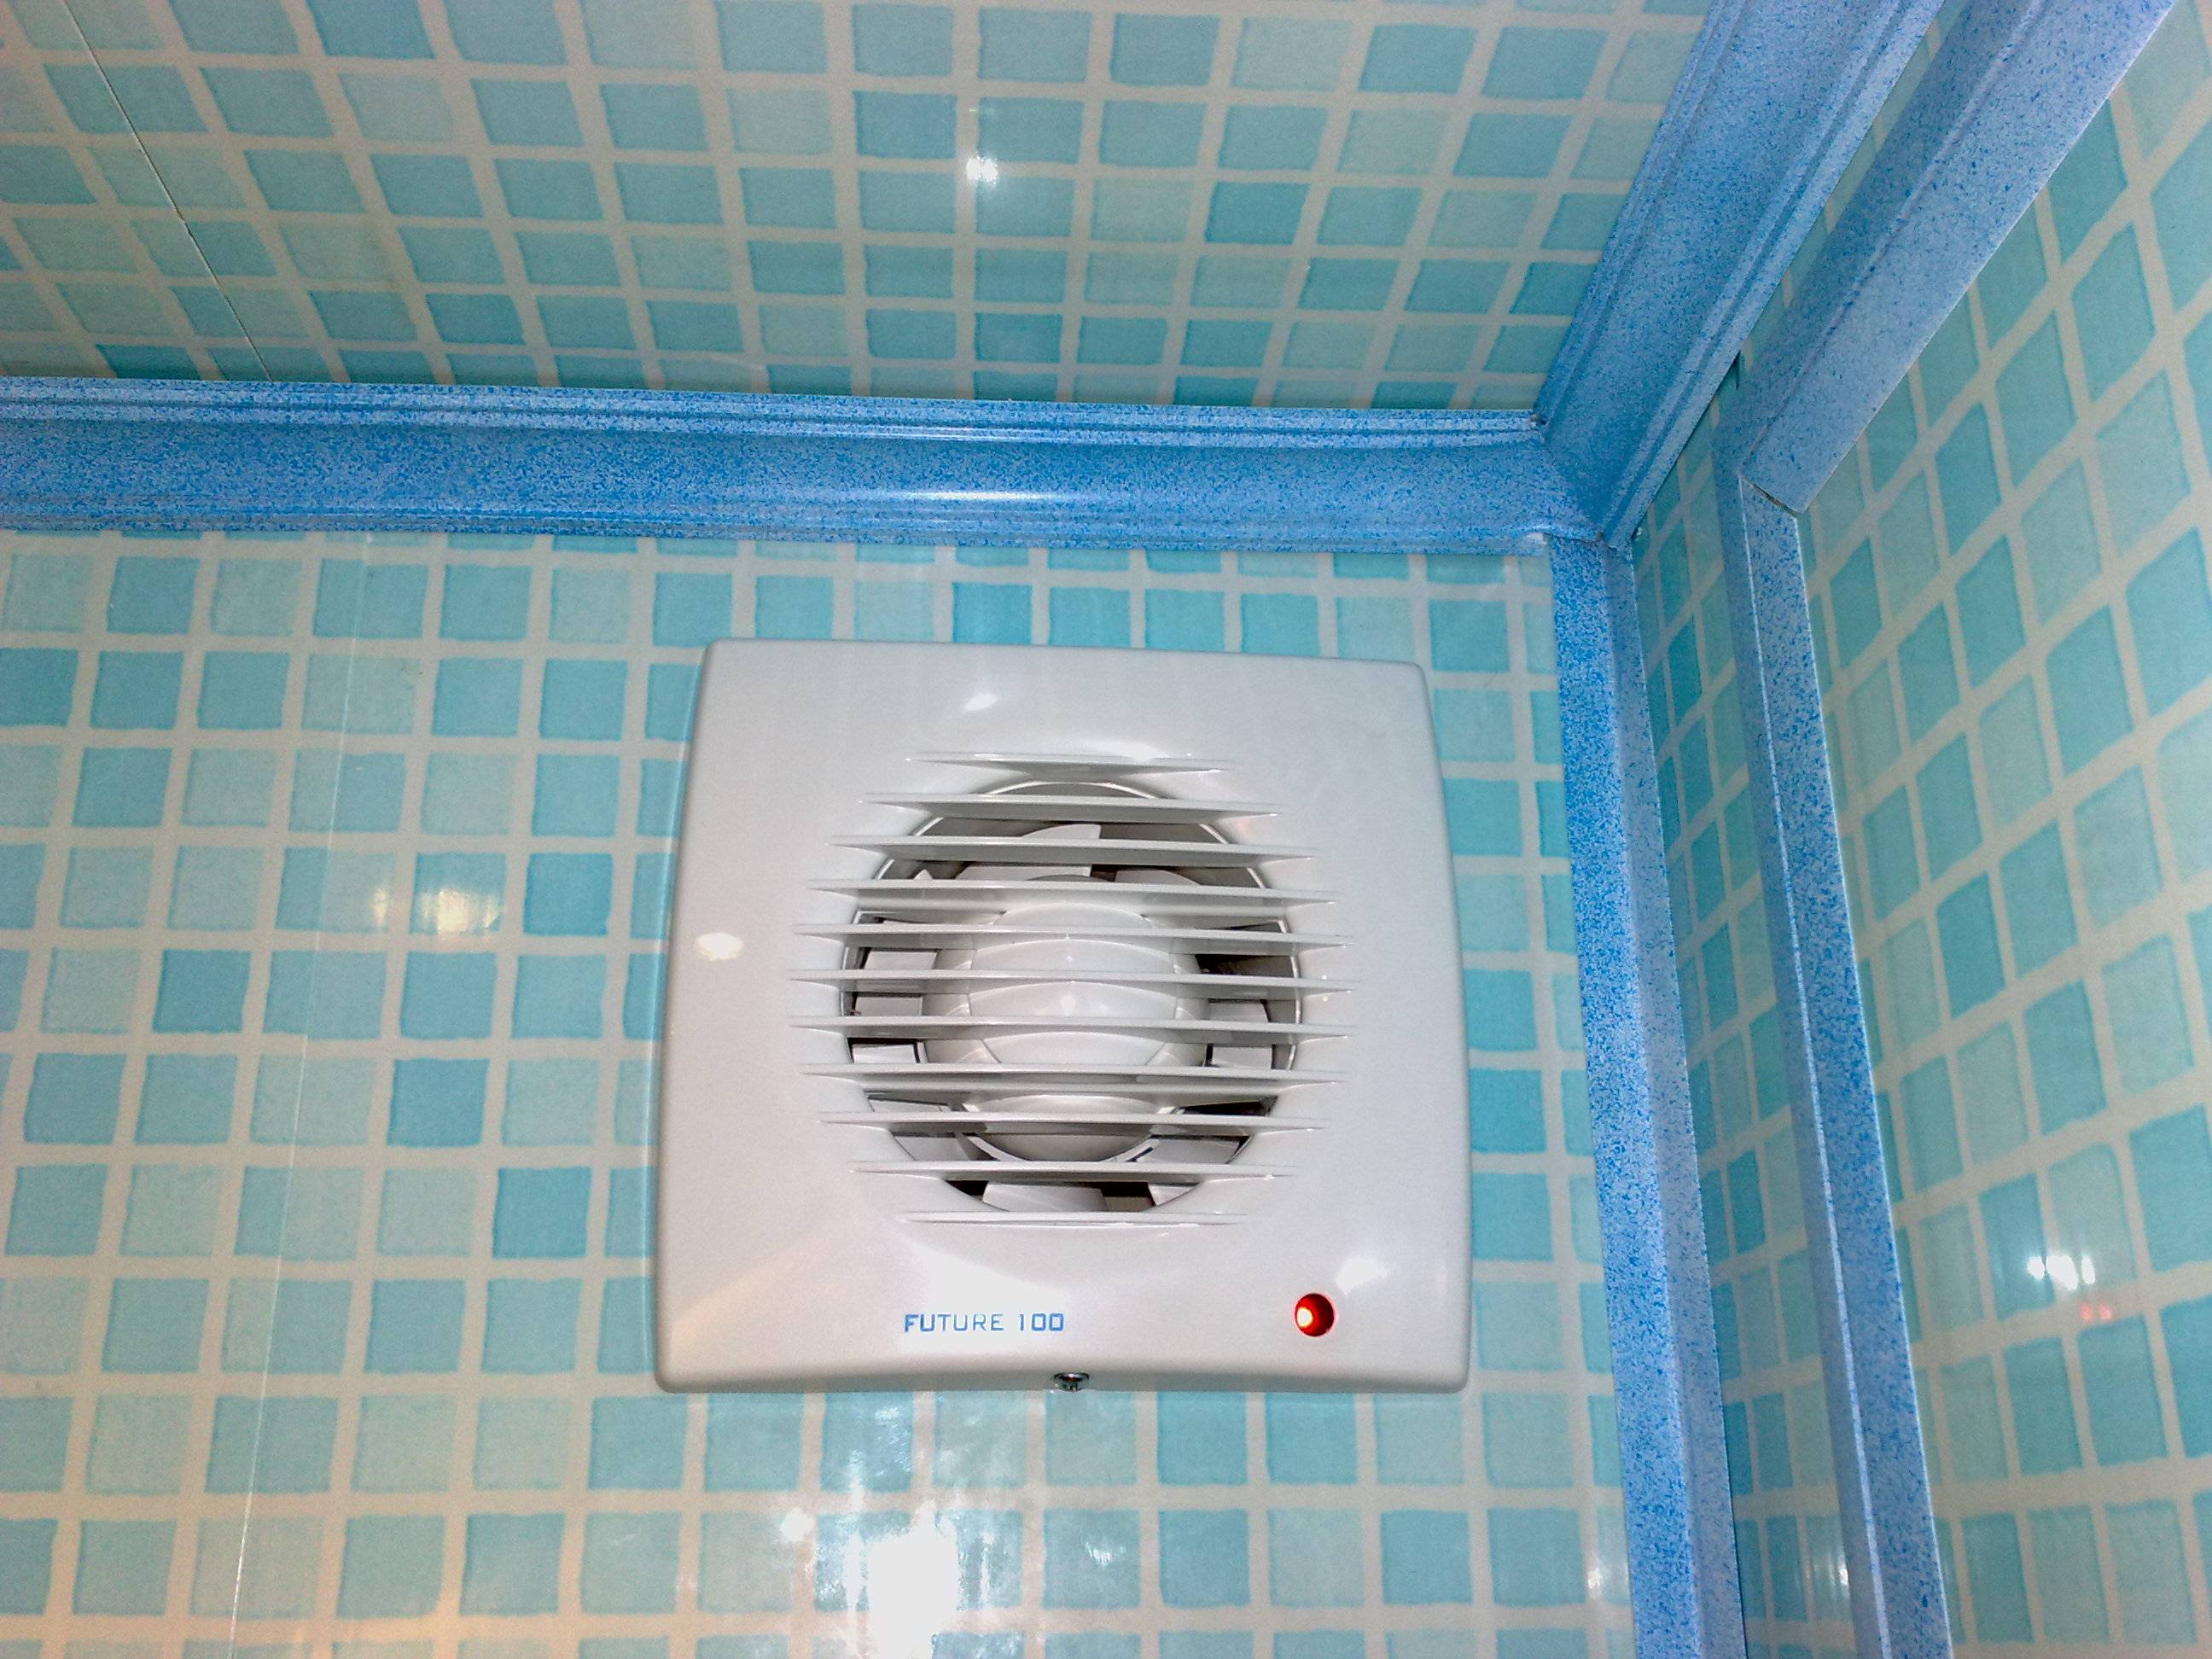 Вентиляция в ванной комнате и туалете: принудительная вытяжка с обратным клапаном, какая нужна, как сделать самостоятельно